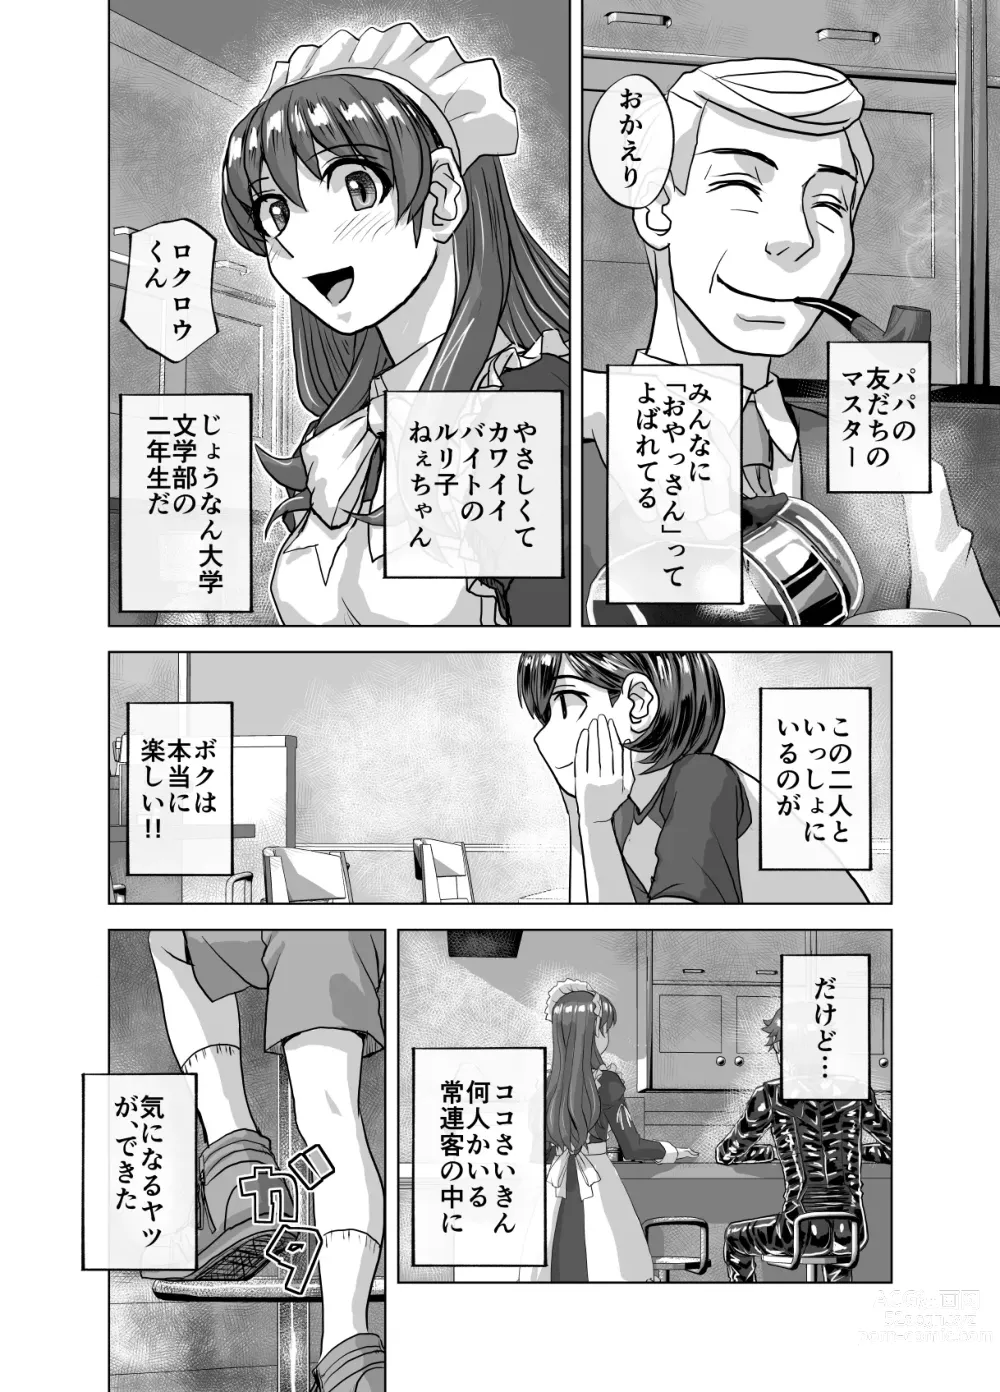 Page 614 of doujinshi BEYOND ~ Aisubeki Kanata no Hitobito 1~10